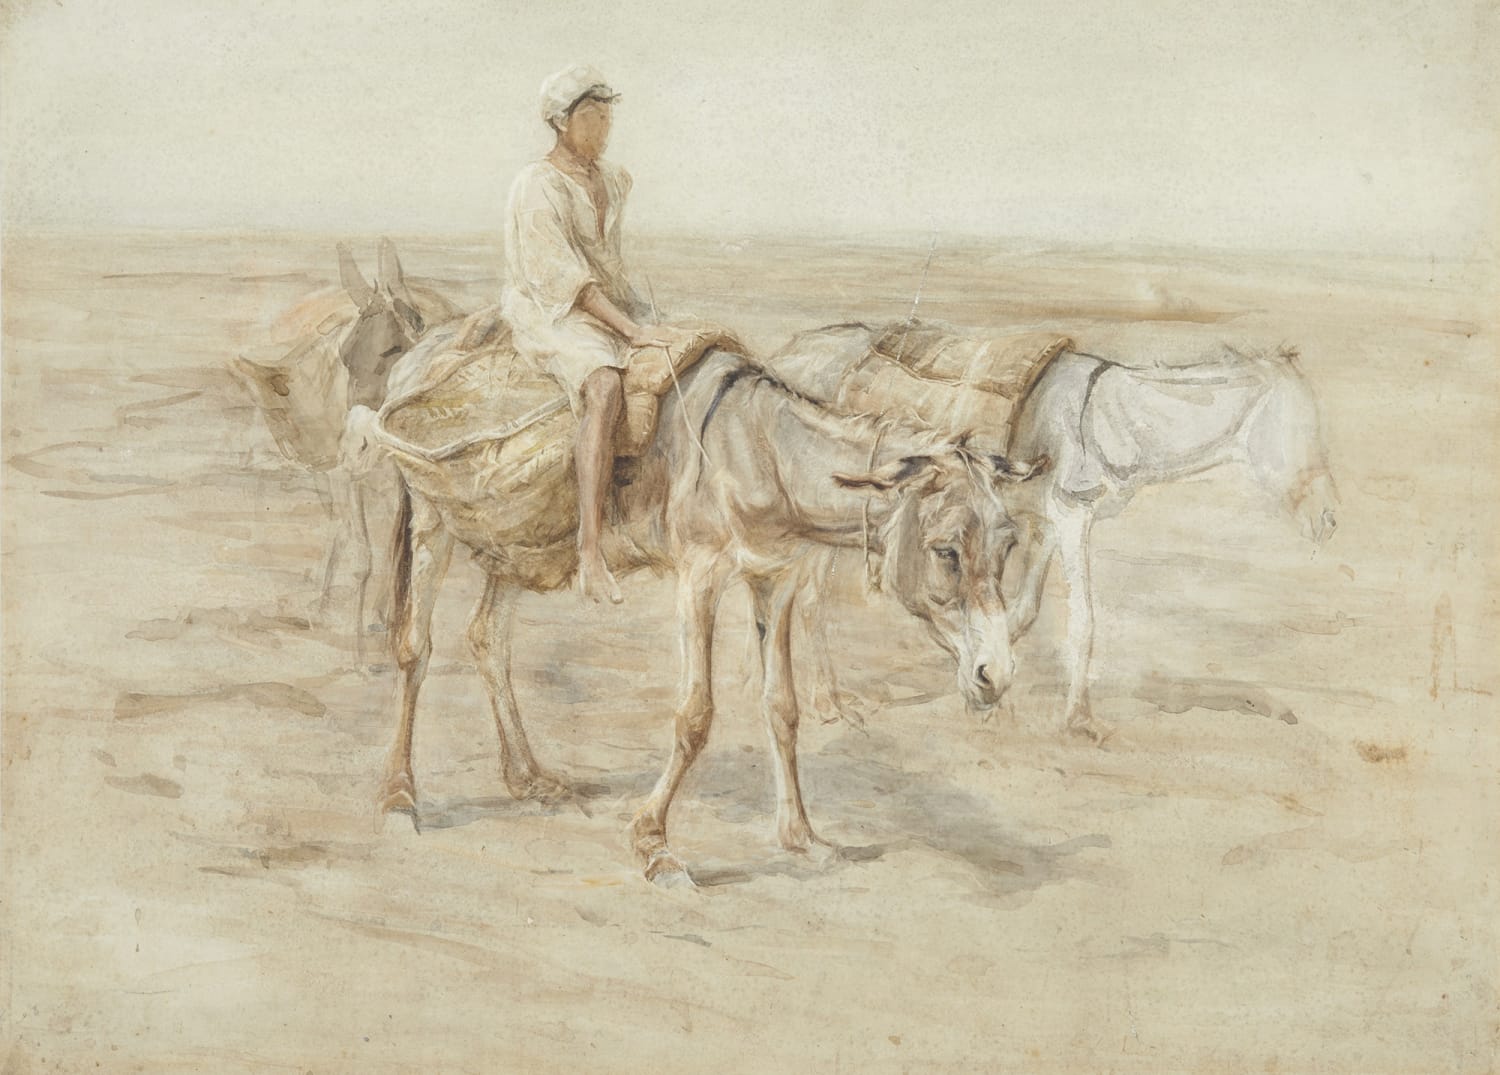 Edwin J Alexander RSA (1870-1926), Arab Boy with Donkeys  watercolour 52.2 x 71.5cm  RSA Diploma Collection Deposit 1926